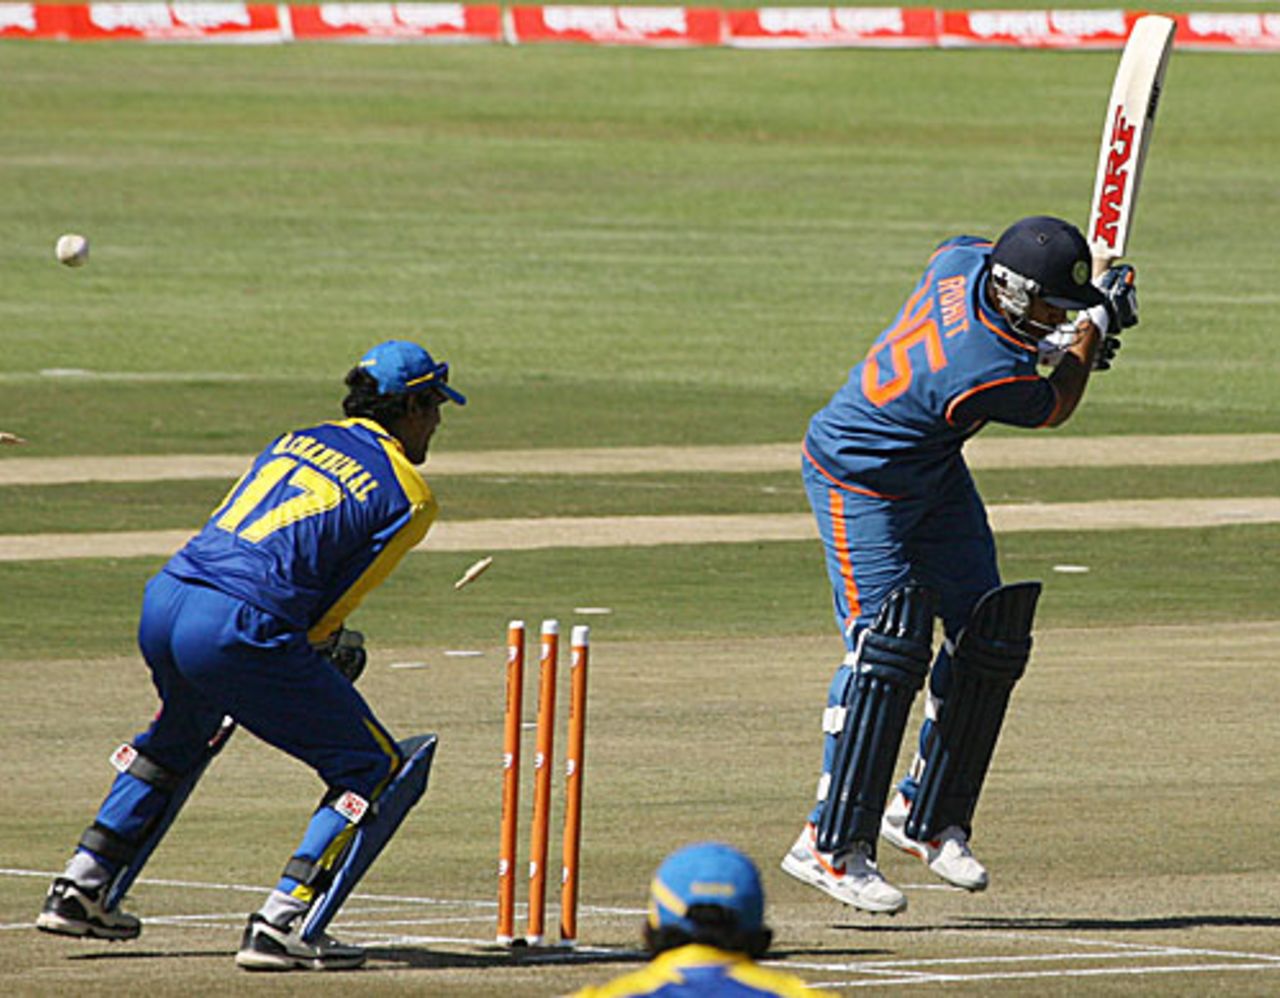 Rohit Sharma is bowled by Suraj Randiv, Sri Lanka v India, Tri-series, 5th ODI, Harare, June 5, 2010